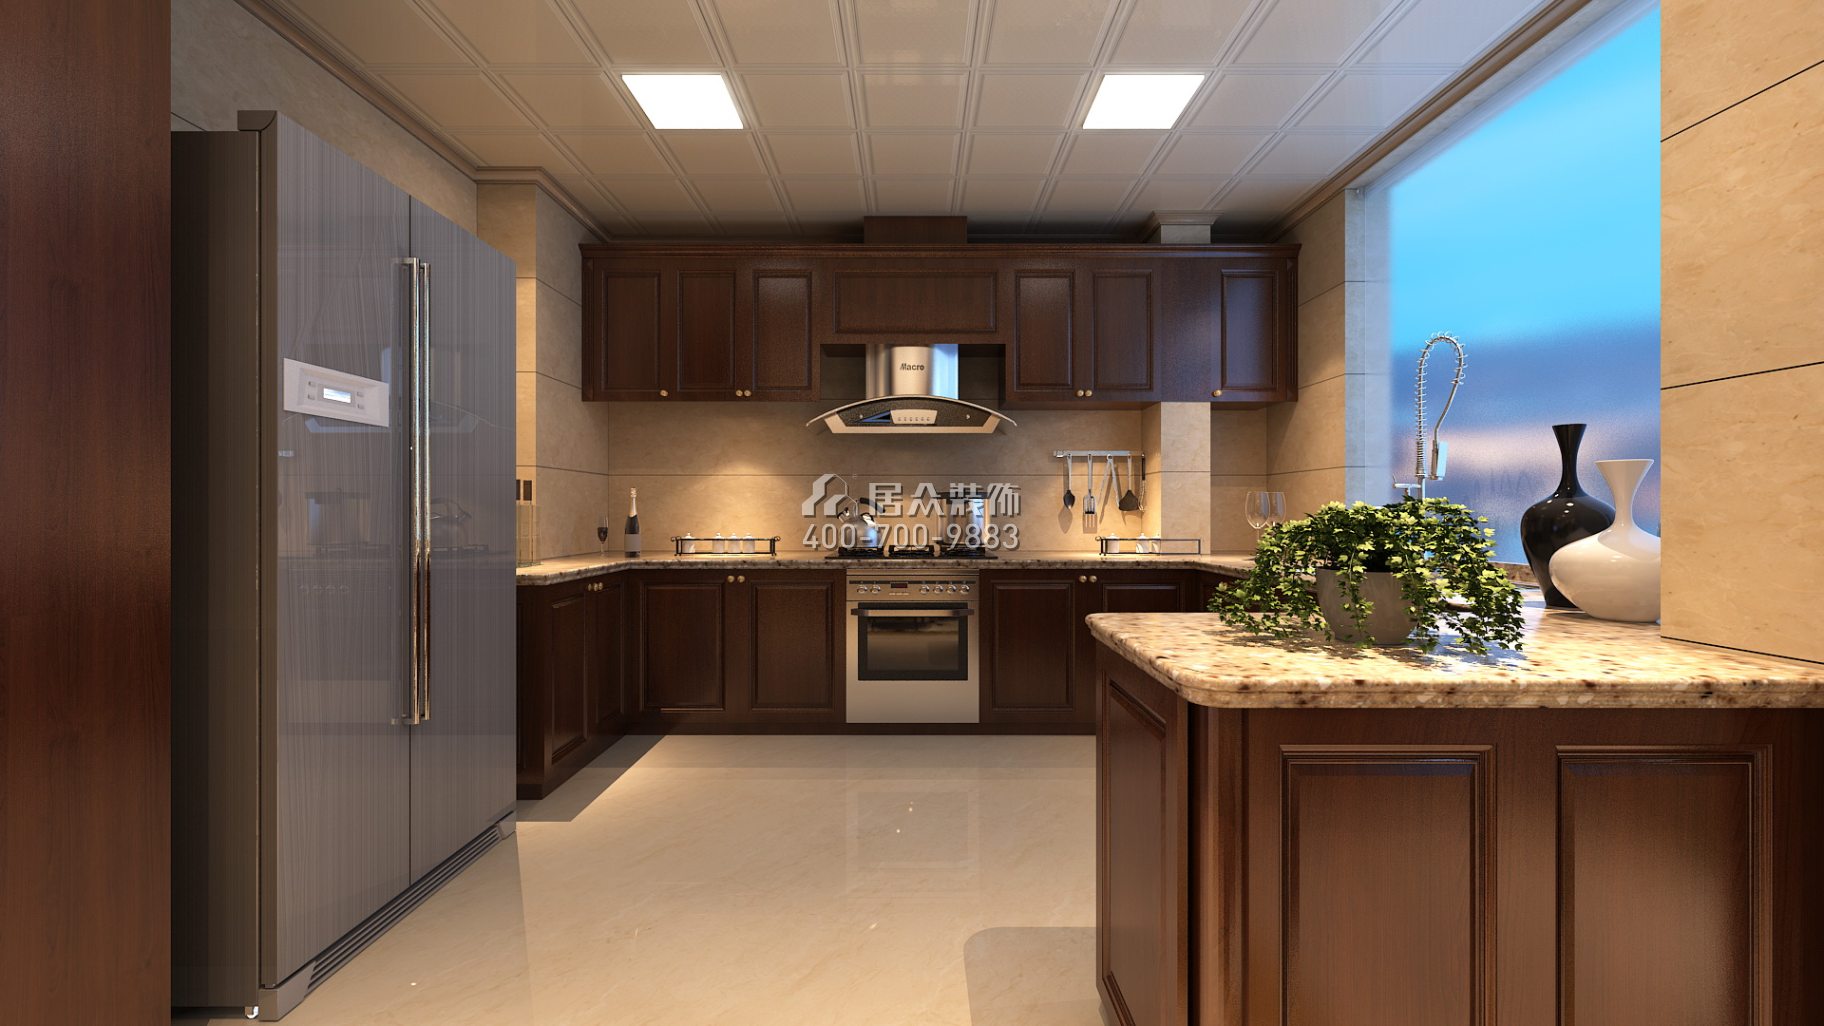 紫御华庭148平方米美式风格平层户型厨房装修效果图